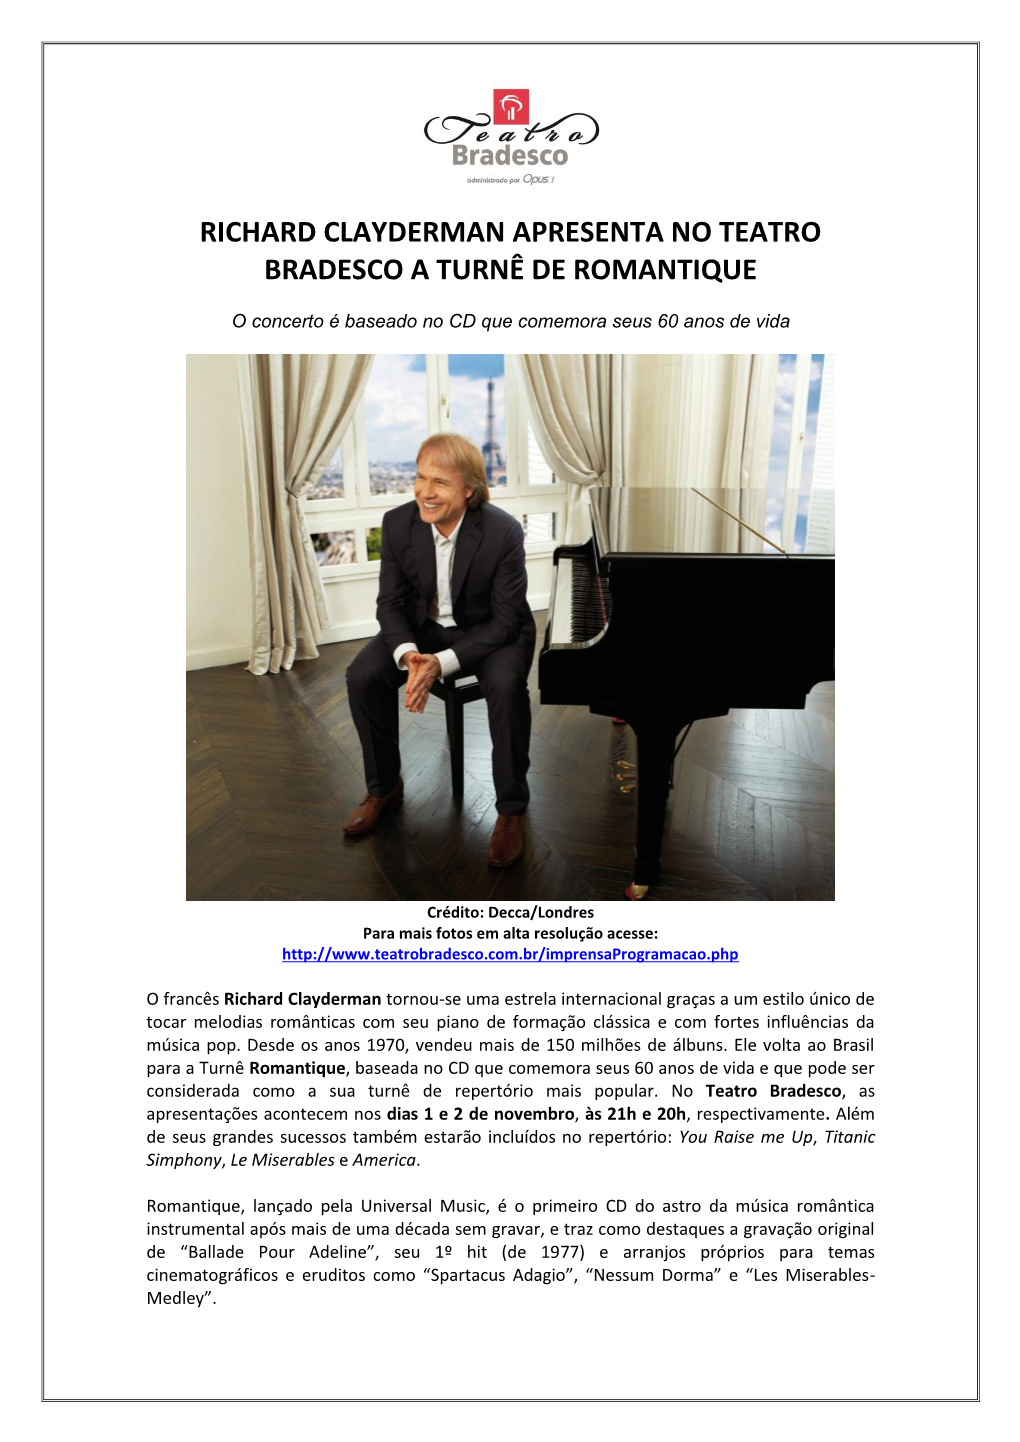 Richard Clayderman Apresenta No Teatro Bradesco a Turnê De Romantique